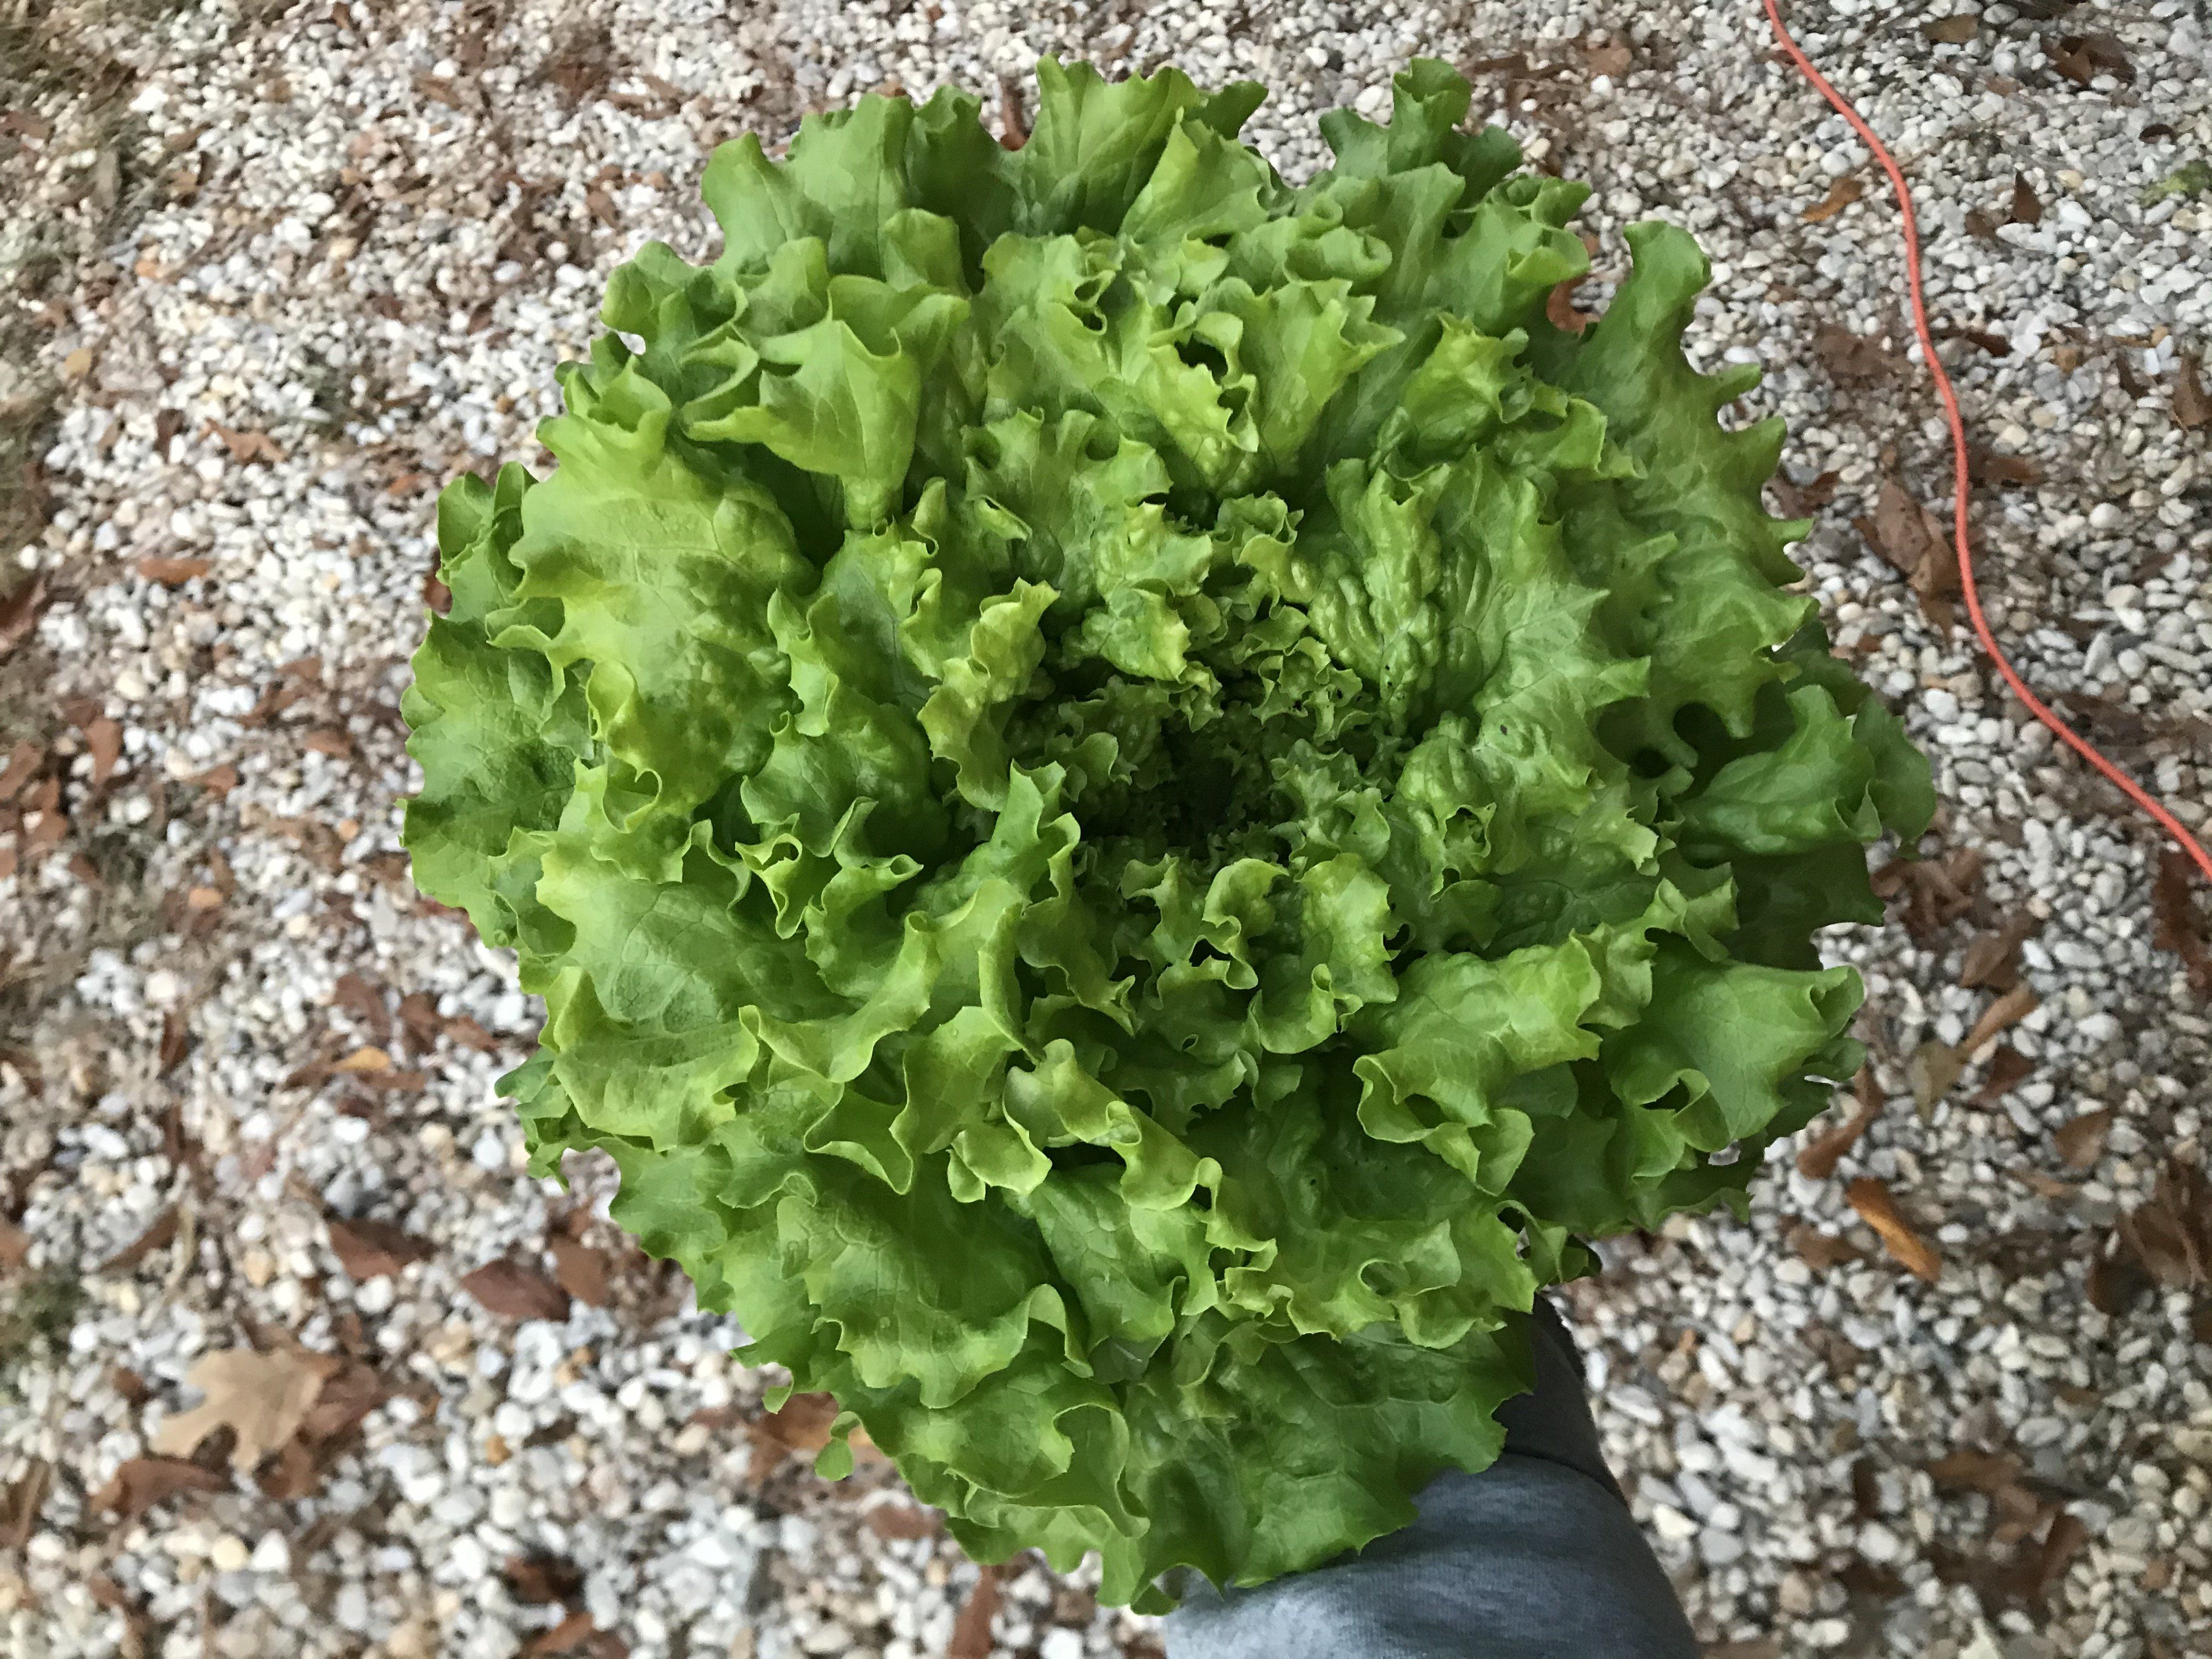 Lettuce is plentiful in January!